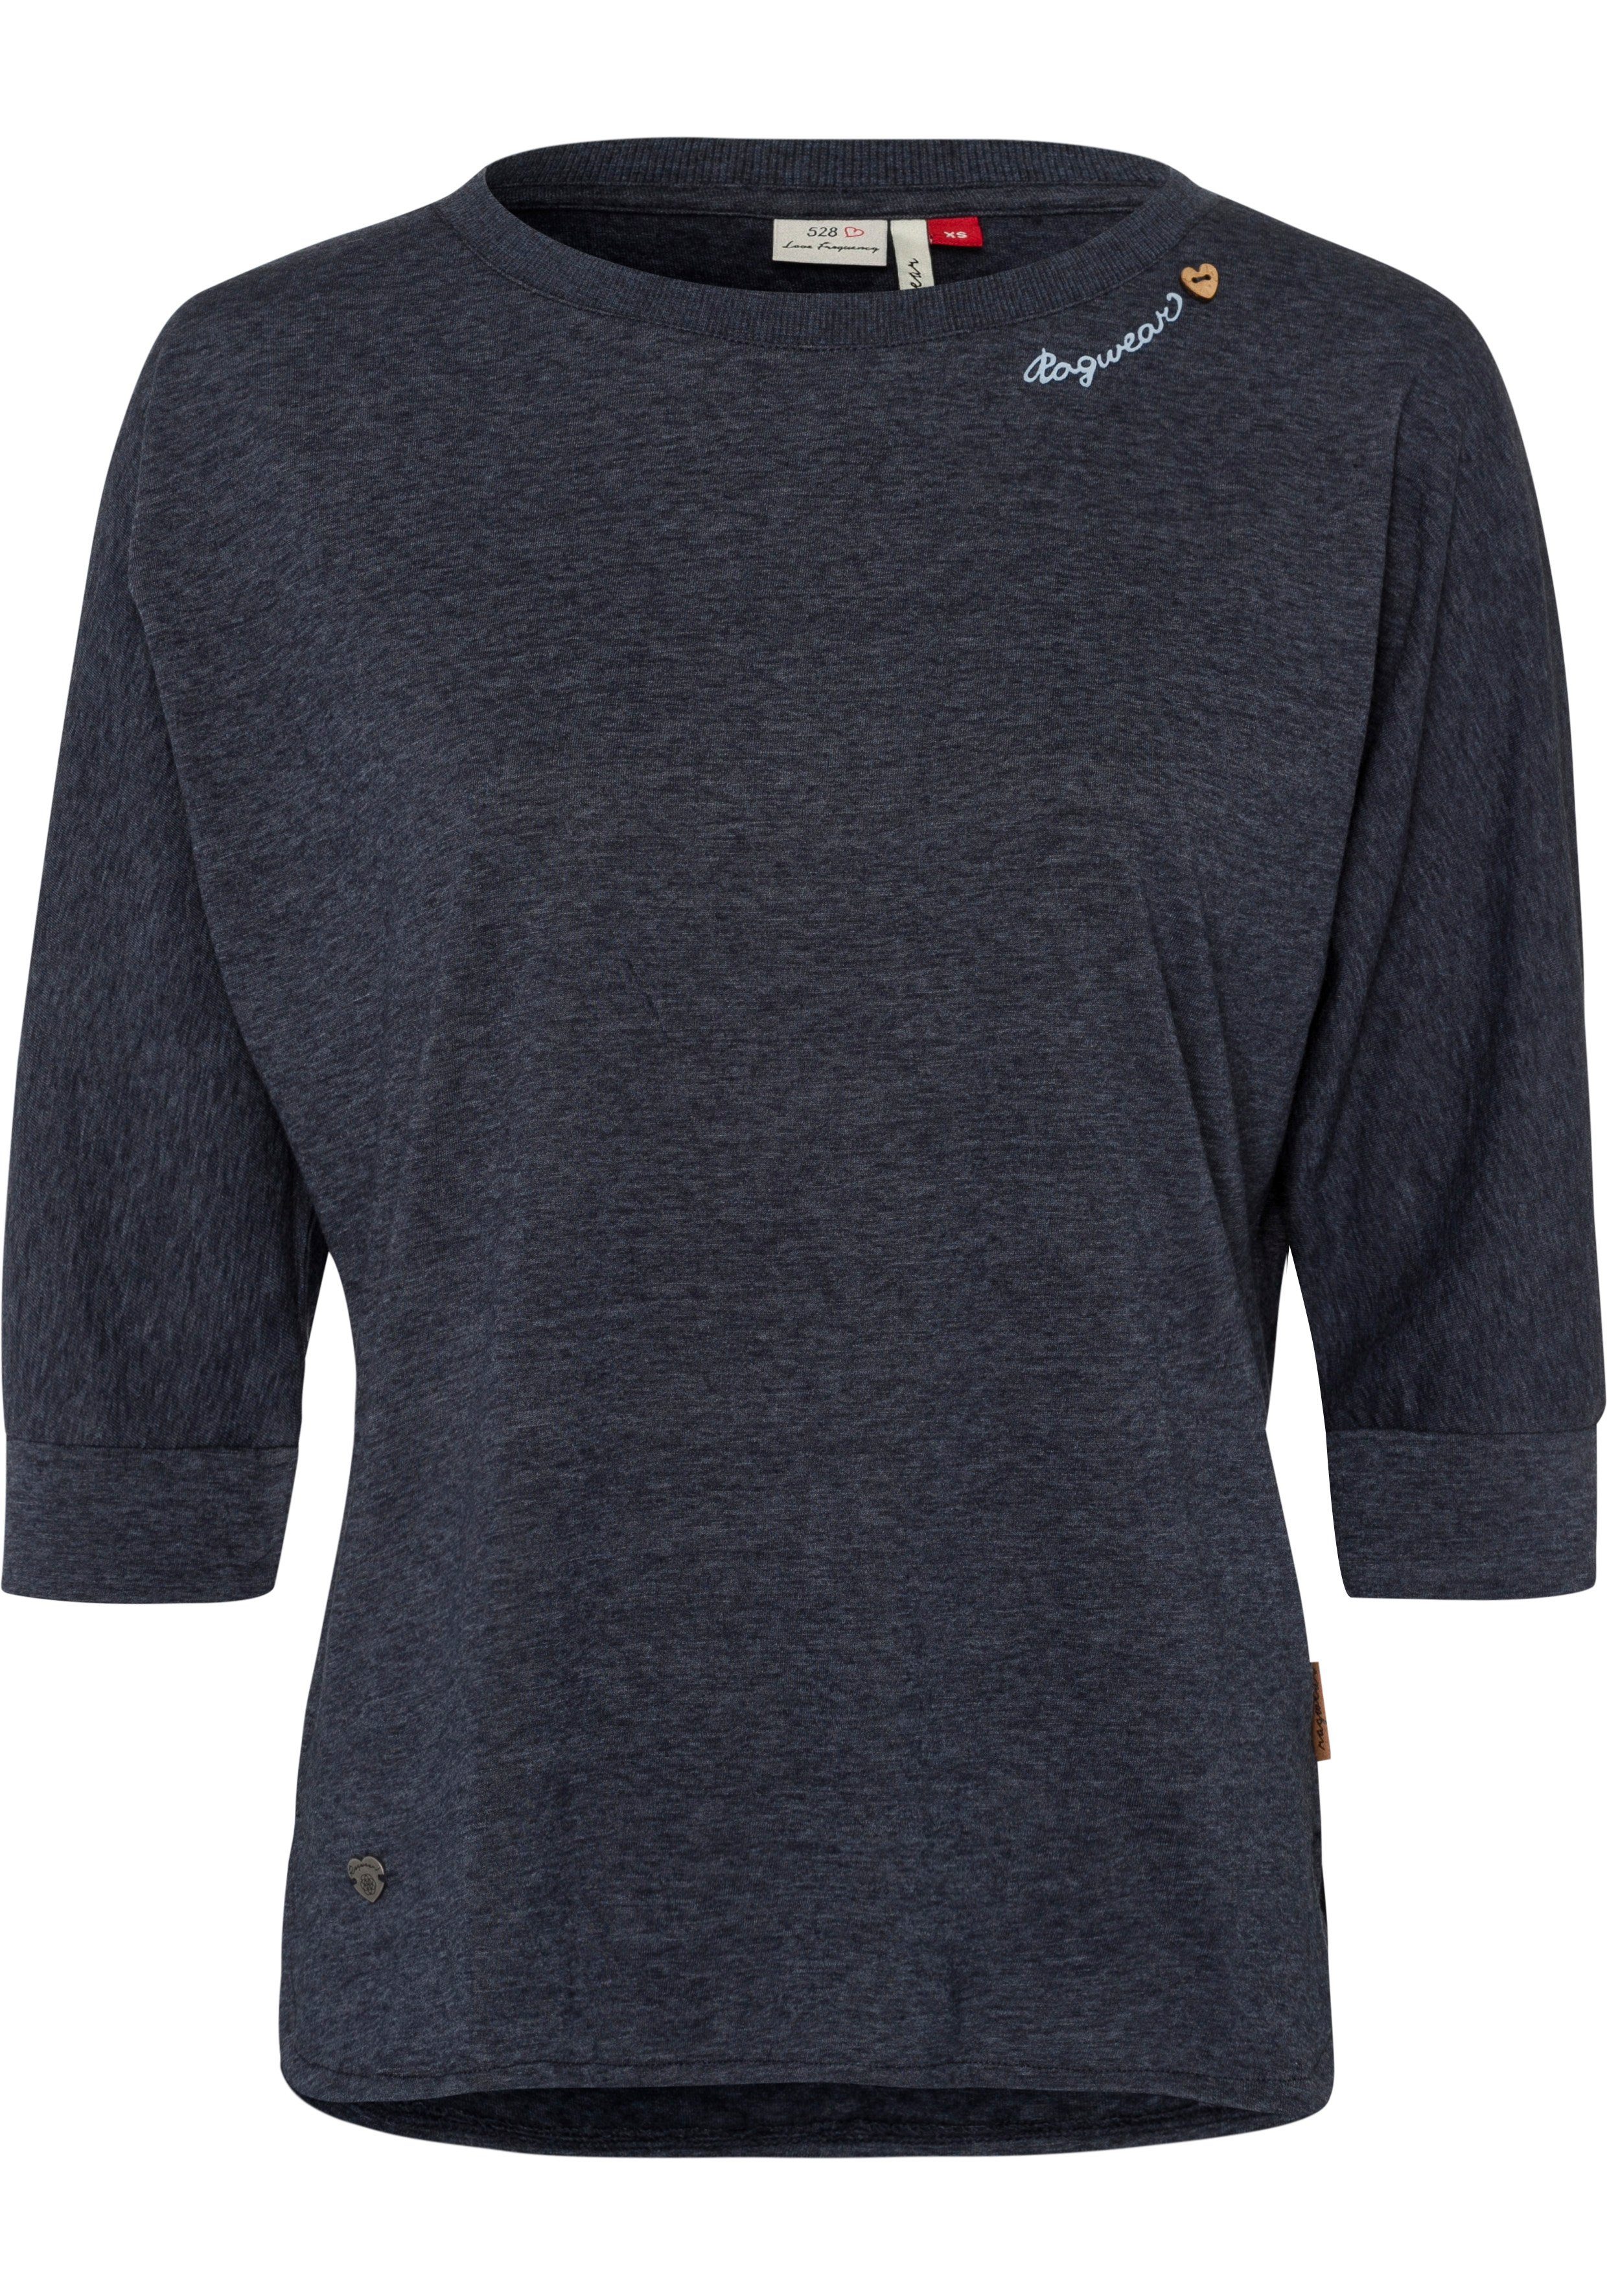 Ragwear T-Shirt mit Herz-Design natürlicher Zierknopfbesatz im in Holzoptik navy SHIMONA